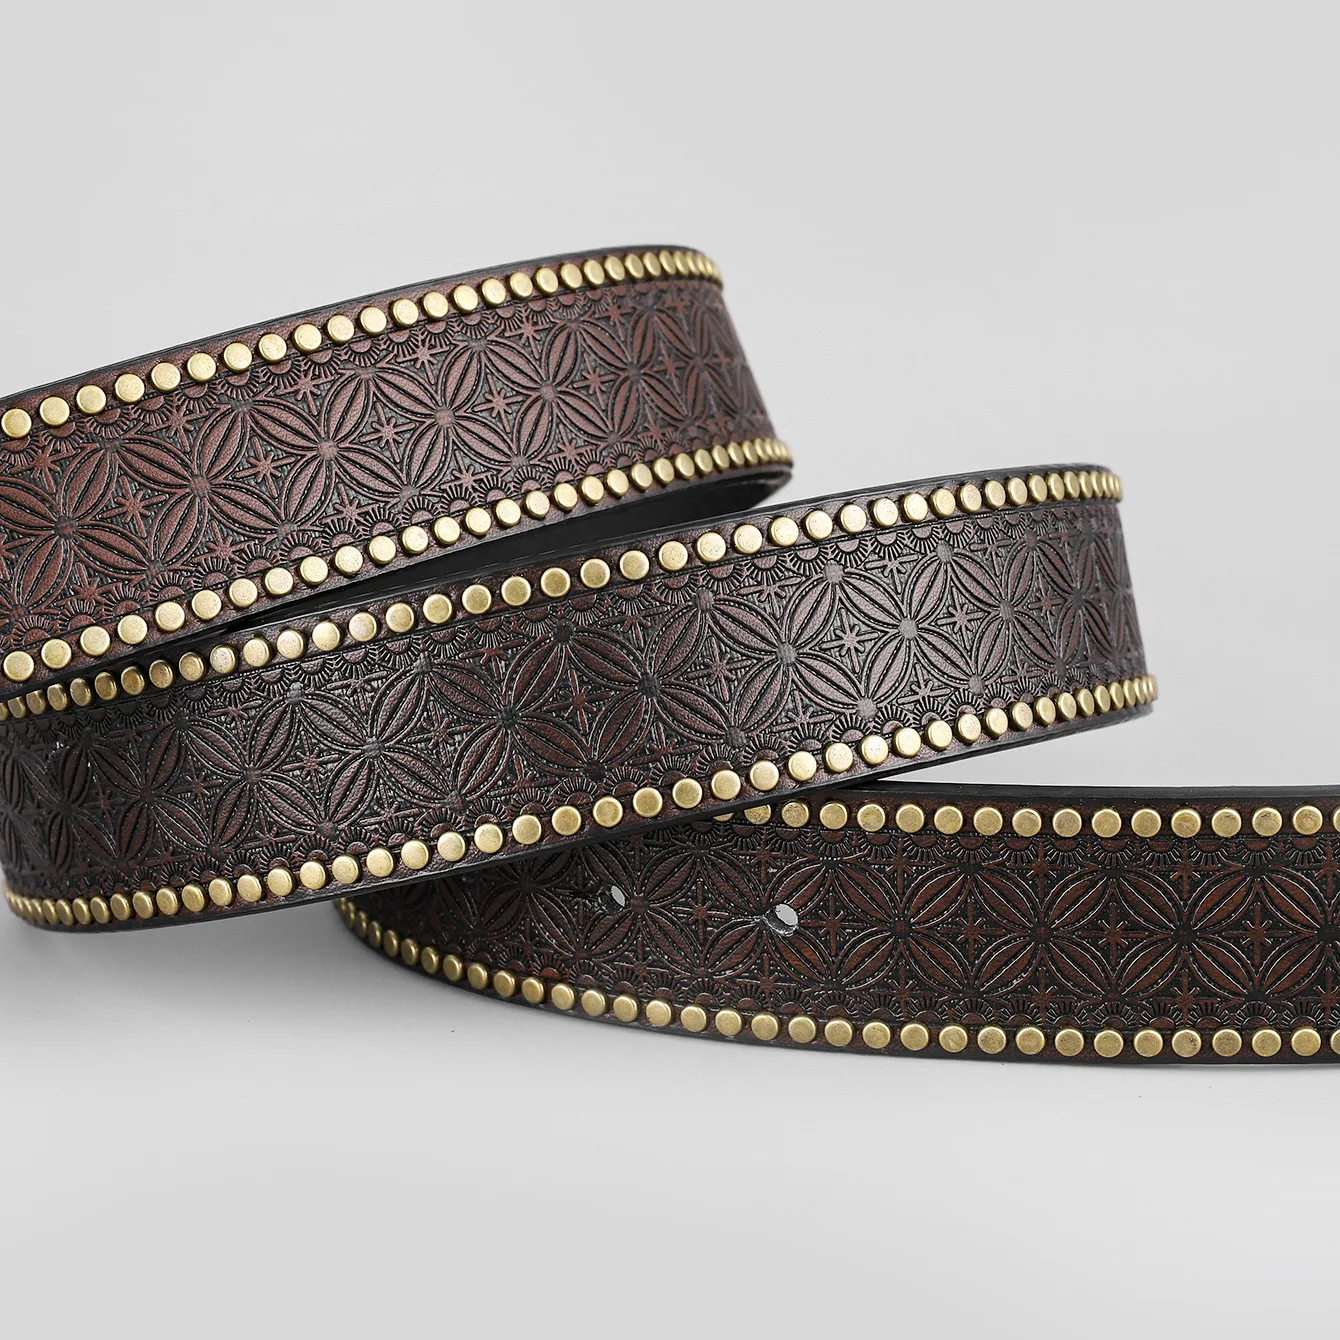 Western Cowboy Men's Leather Retro Belt Domineering Bull Head Buckle  Leather Belt Pattern Retro Leather Belt - Belts - AliExpress